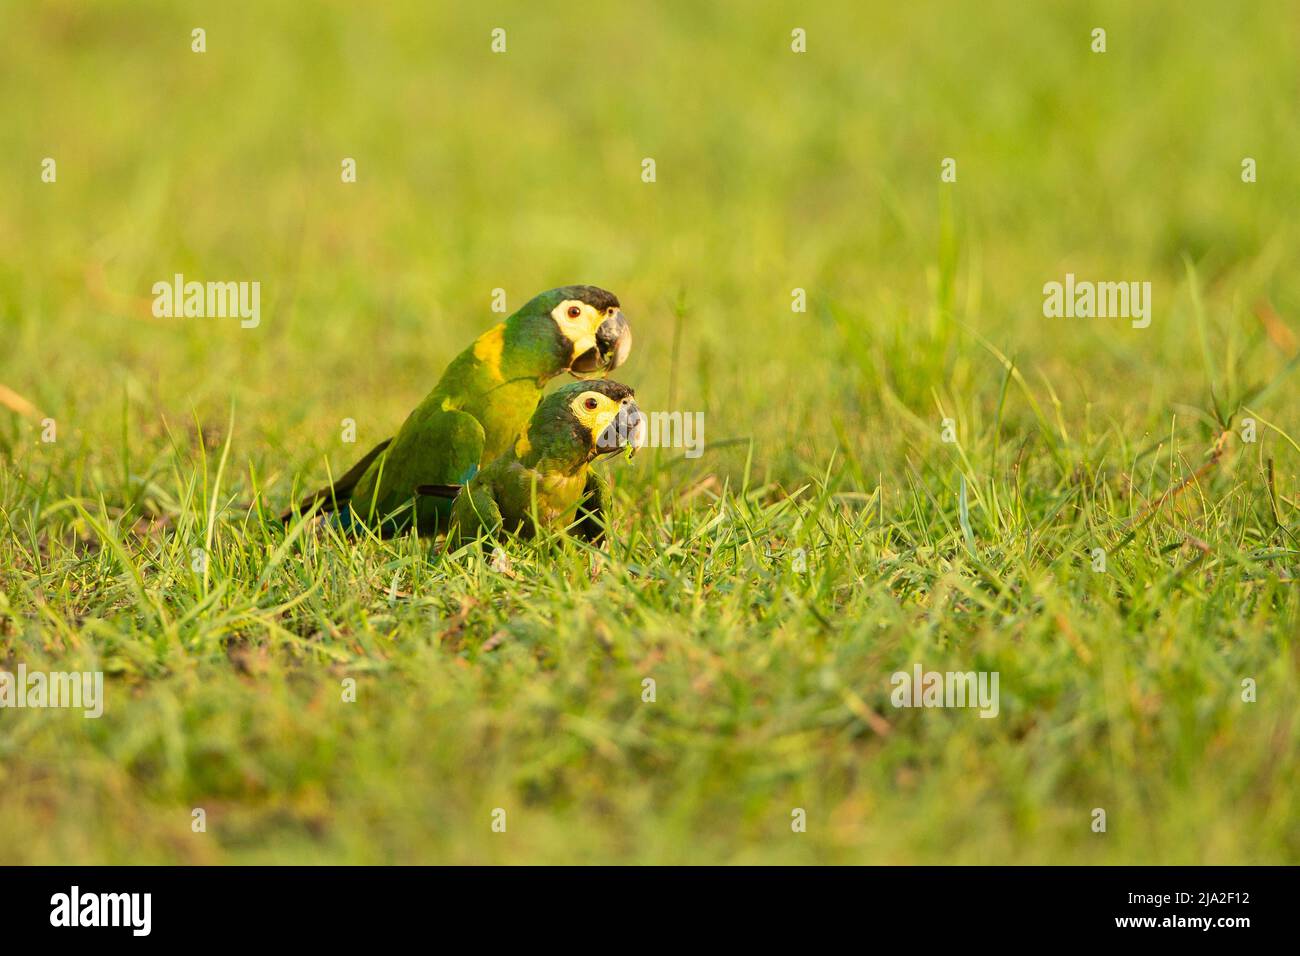 Golden-collared Macaw (Primolius auricollis) pair in grass Stock Photo